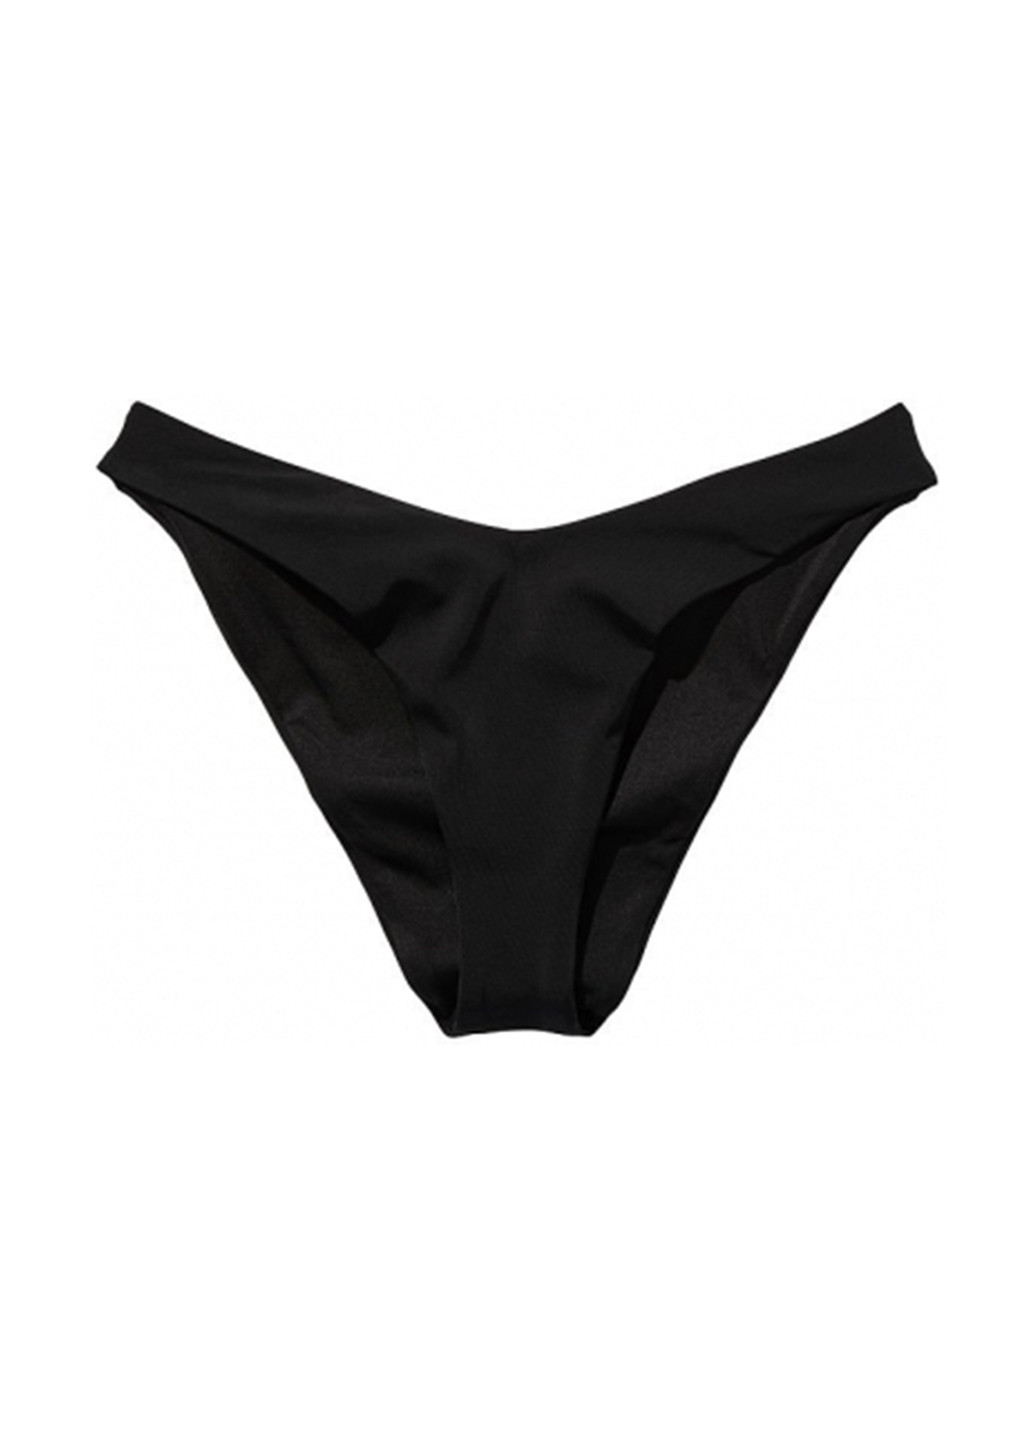 Чорний літній купальник (ліф, труси) бандо, роздільний Victoria's Secret